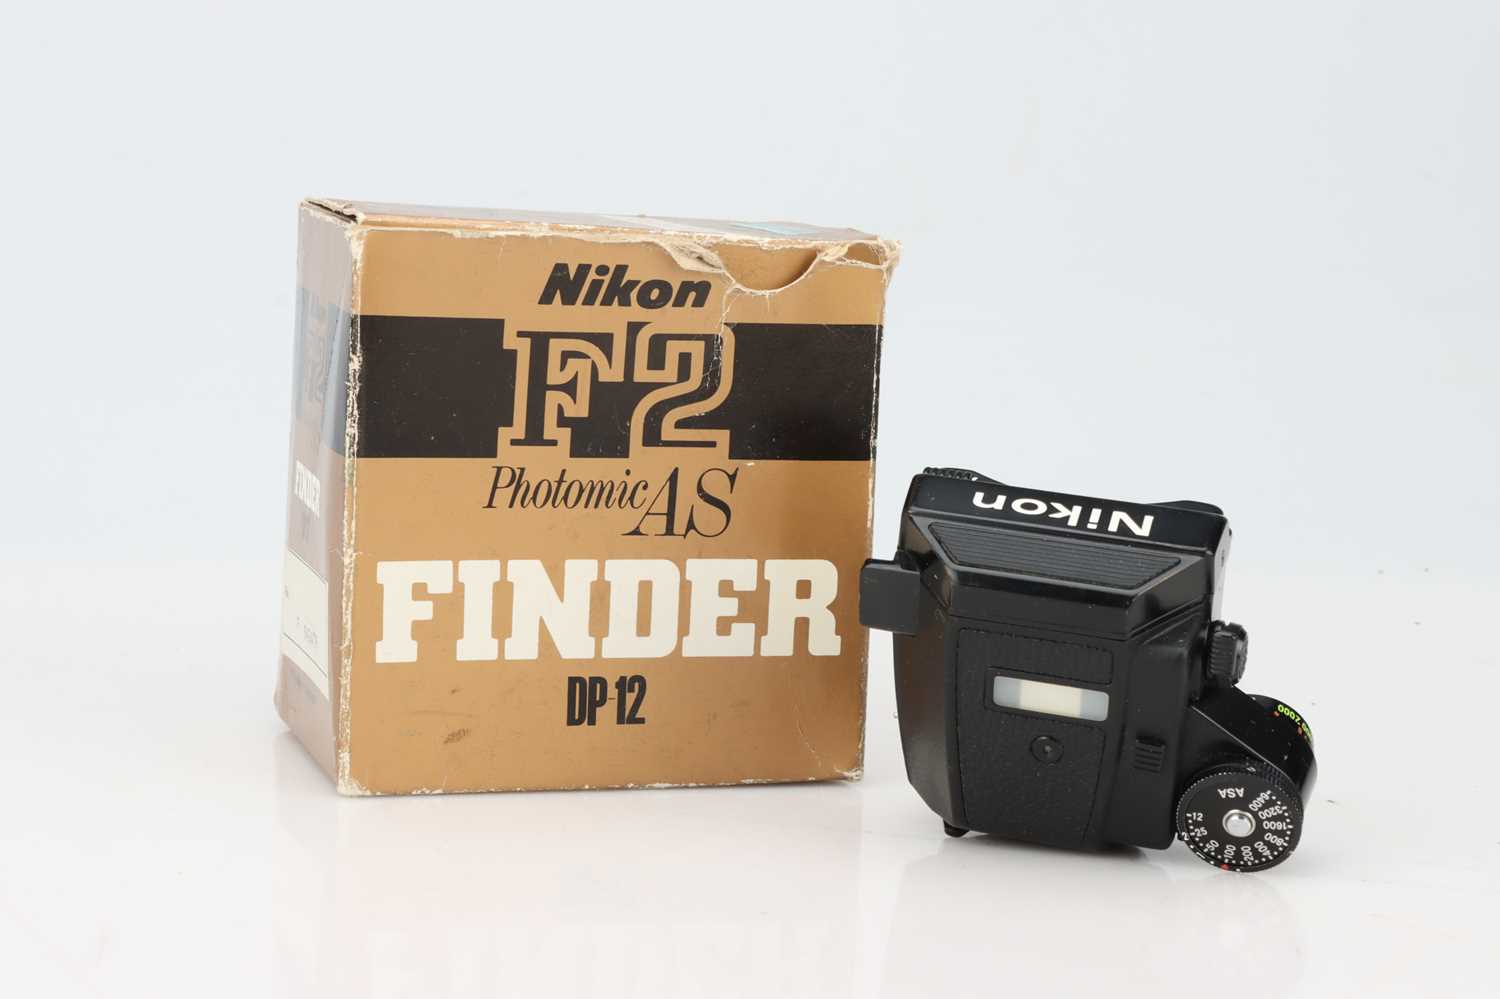 Lot 653 A Nikon F2 Photomic As Finder Dp 12